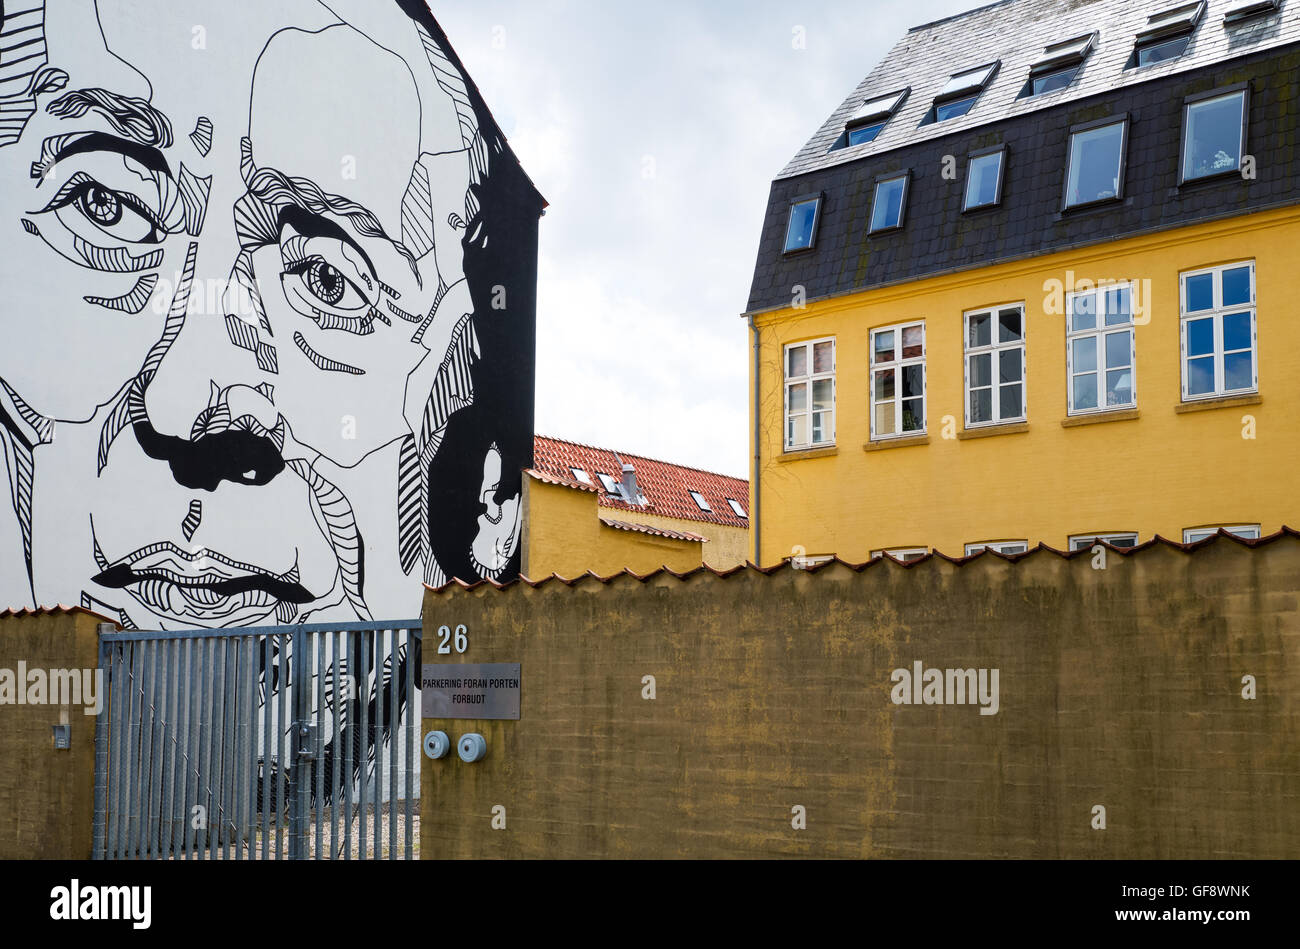 Odense, Danemark - 21 juillet 2015 : Une peinture murale dans le vieux centre-ville Banque D'Images